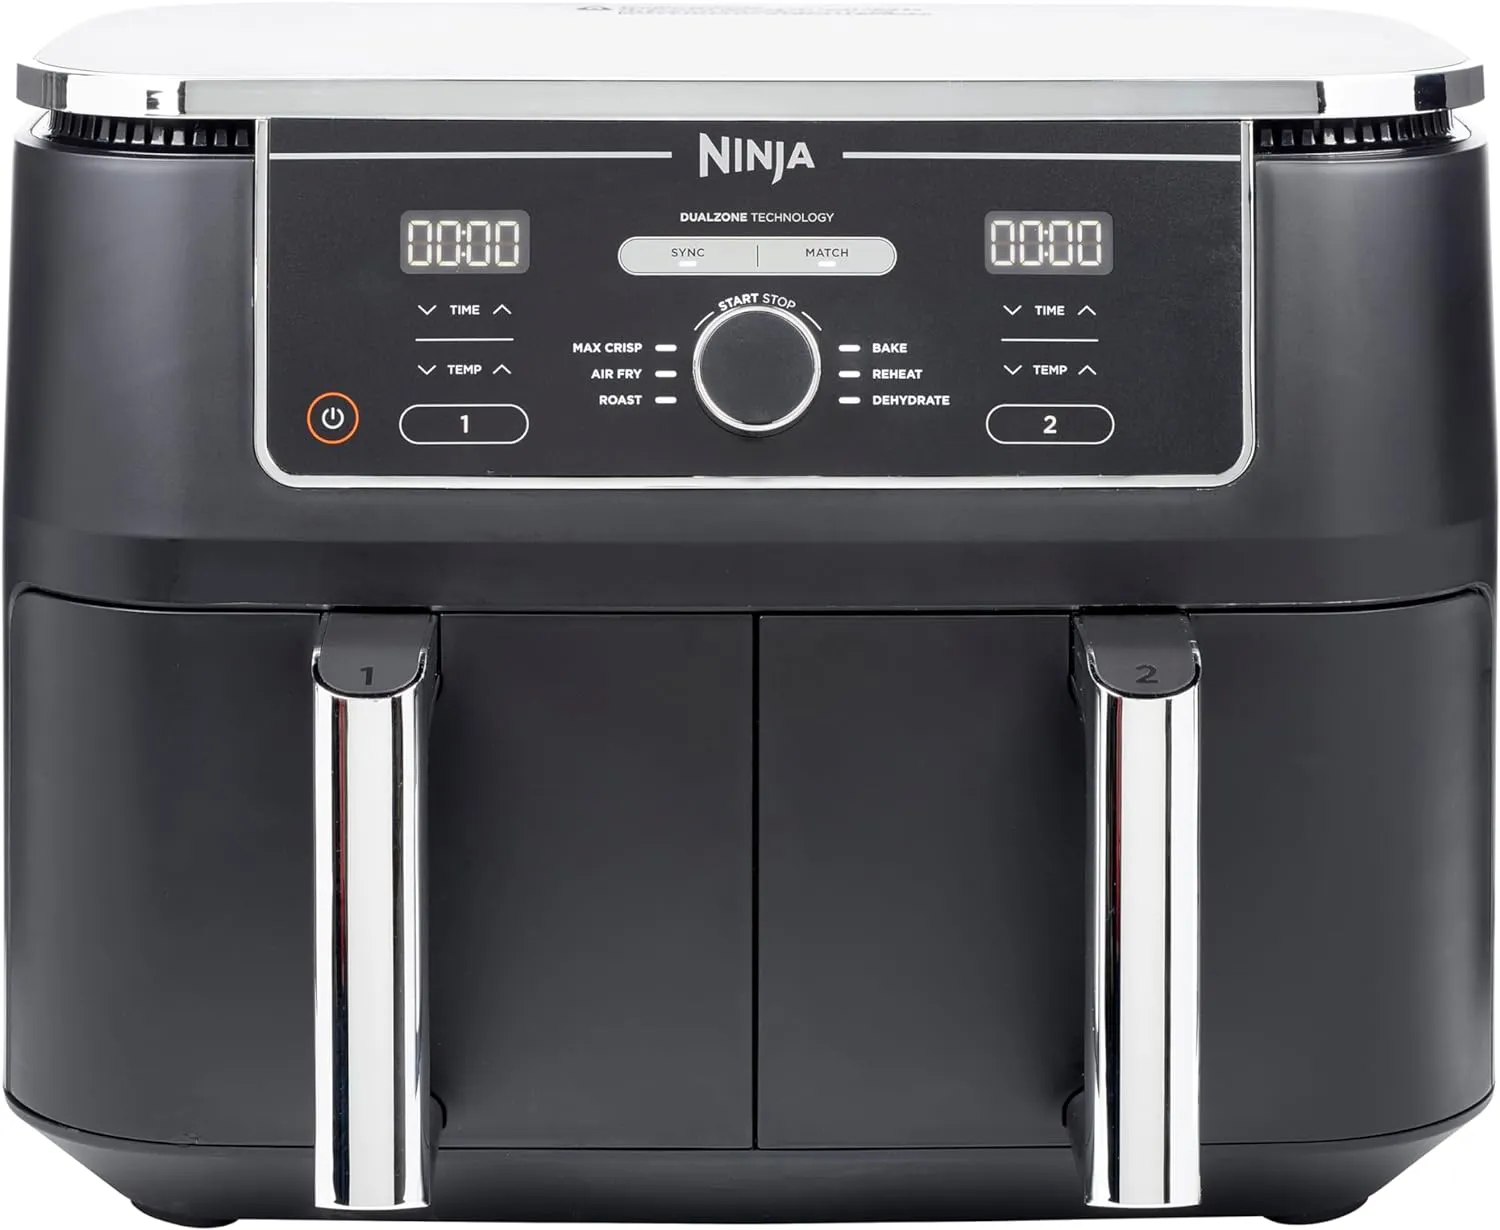 Ninja Foodi MAX digitale luchtfriteuse met dubbele zone, 2 laden, 9,5 liter, 6-in-1, gebruikt geen olie, luchtfrituren, maximaal knapperig, braden, bakken, opwarmen, uitdrogen, 8 porties koken, anti-aanbaklaag, vaatwasmachinebestendige manden